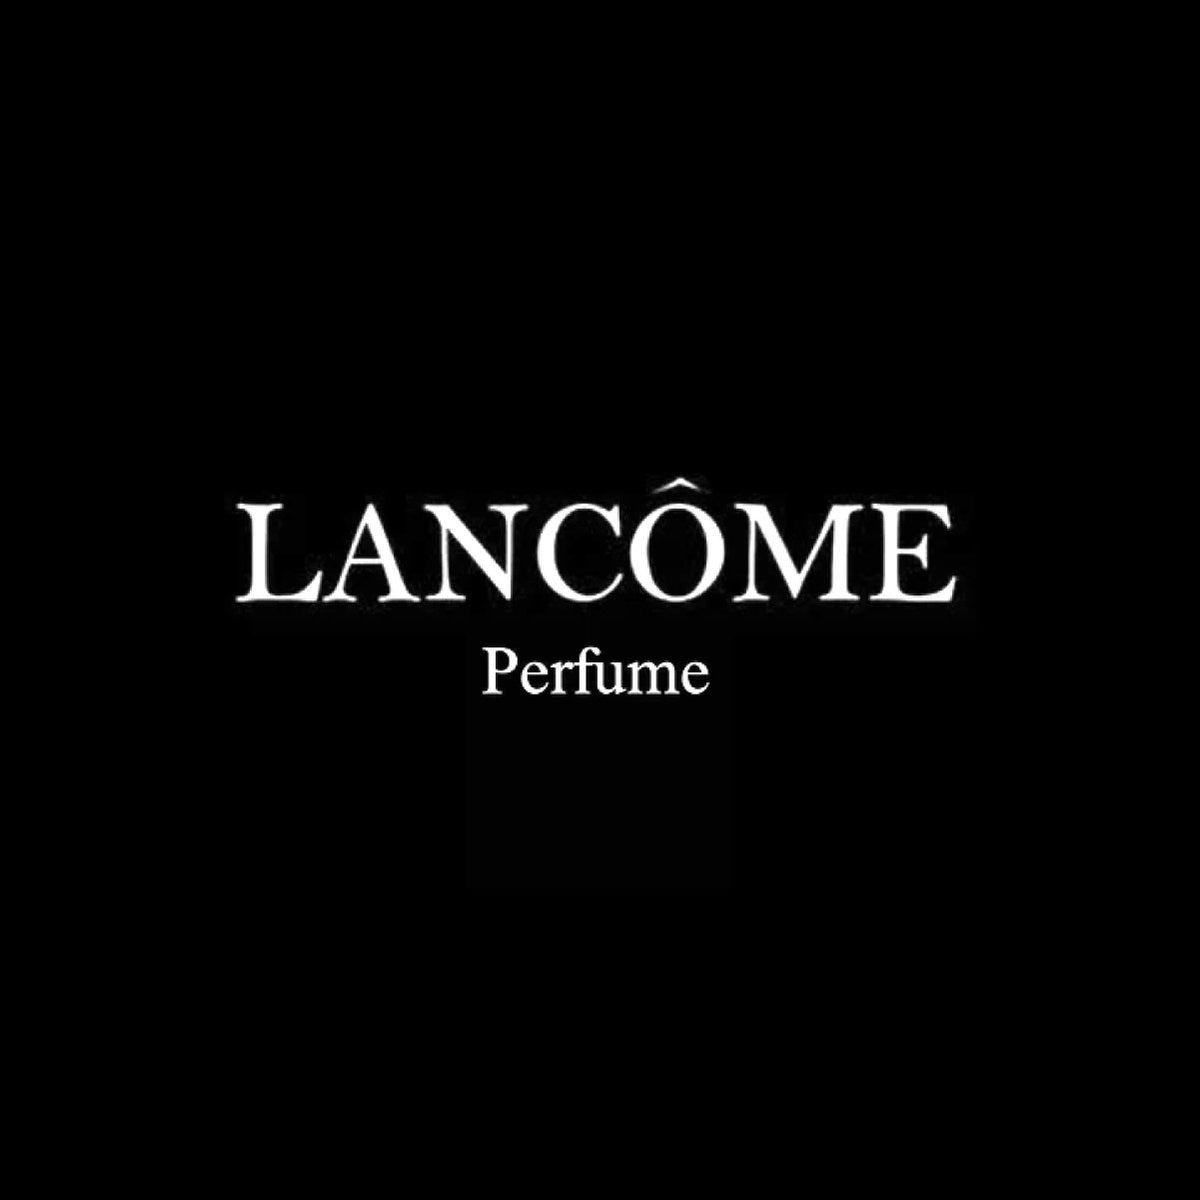 Lancome Perfume